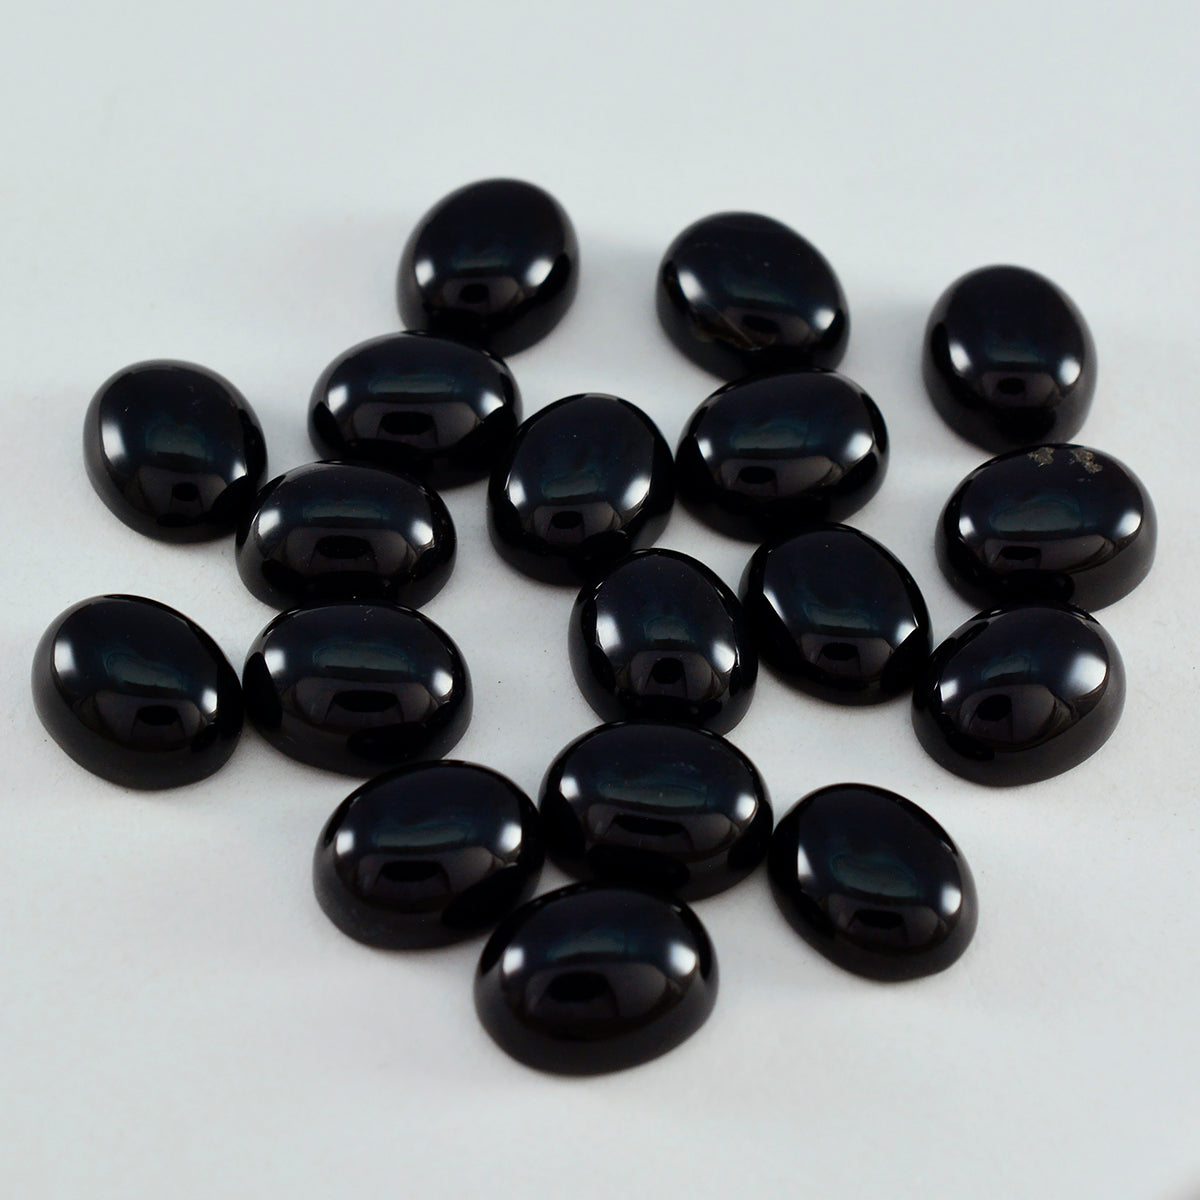 Riyogems 1 Stück schwarzer Onyx-Cabochon, 6 x 8 mm, ovale Form, Edelstein von ausgezeichneter Qualität